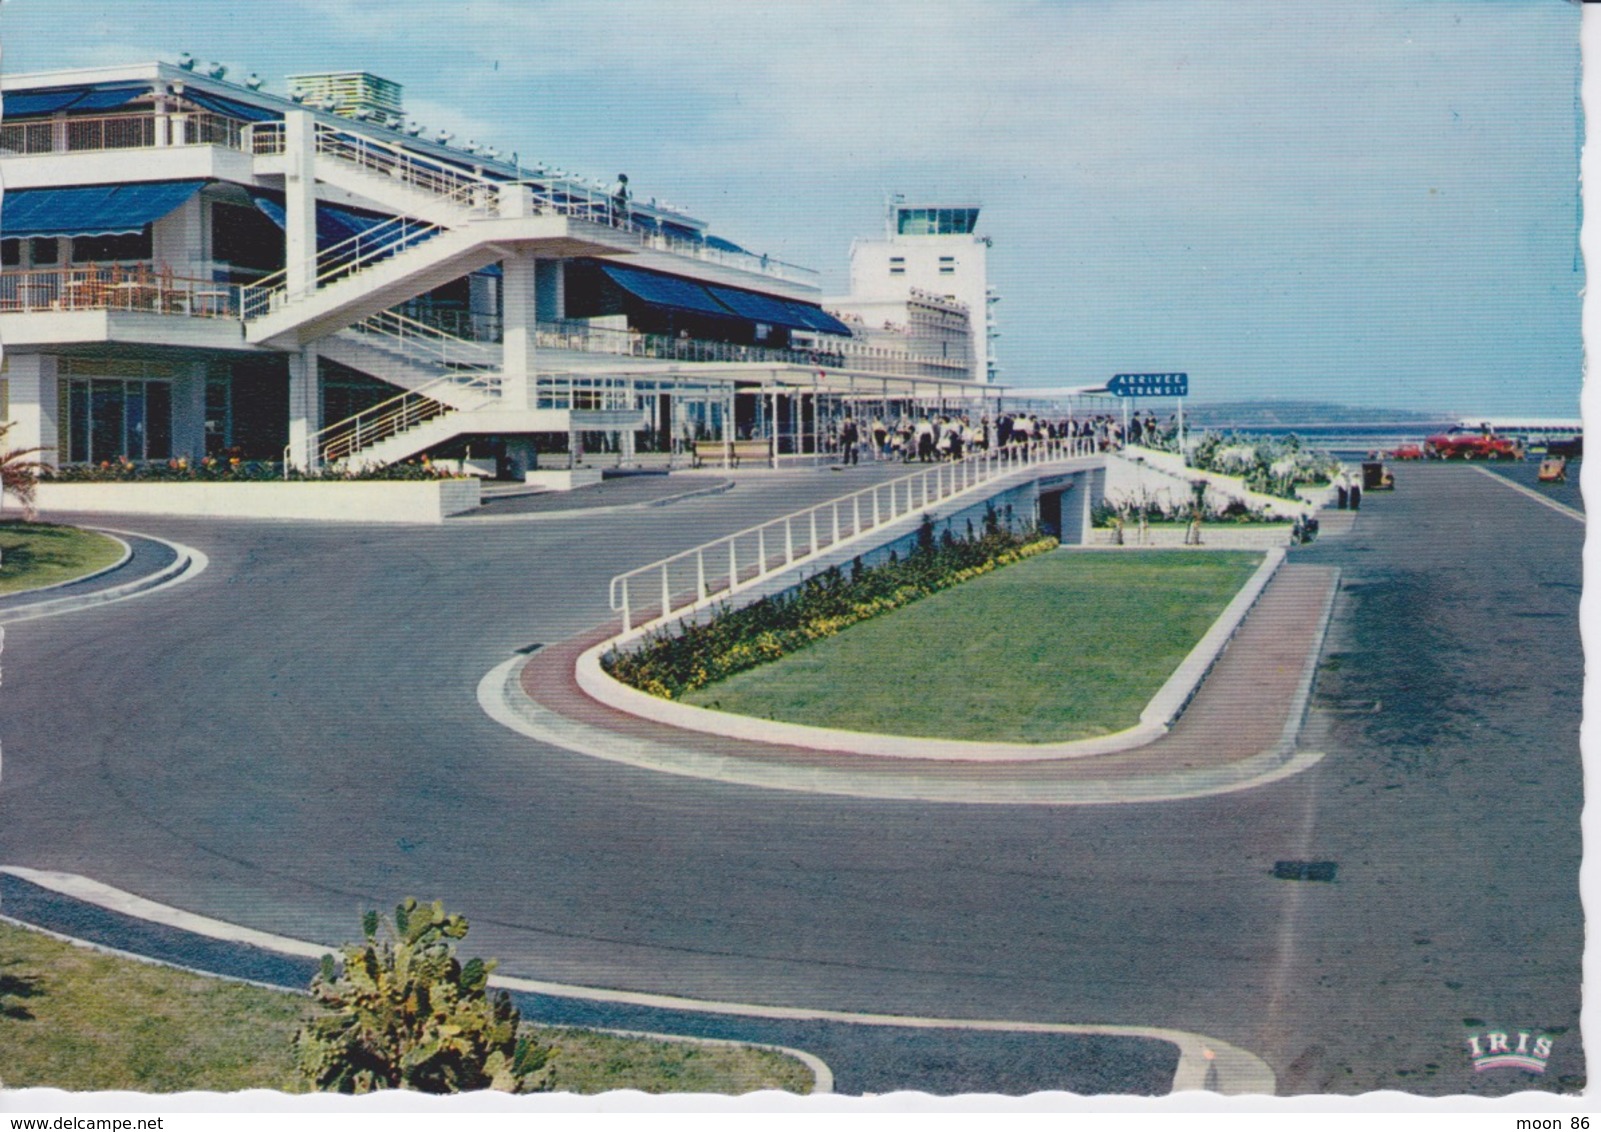 06 - NICE - AÉROPORT DE NICE COTE D'AZUR - Aeronáutica - Aeropuerto